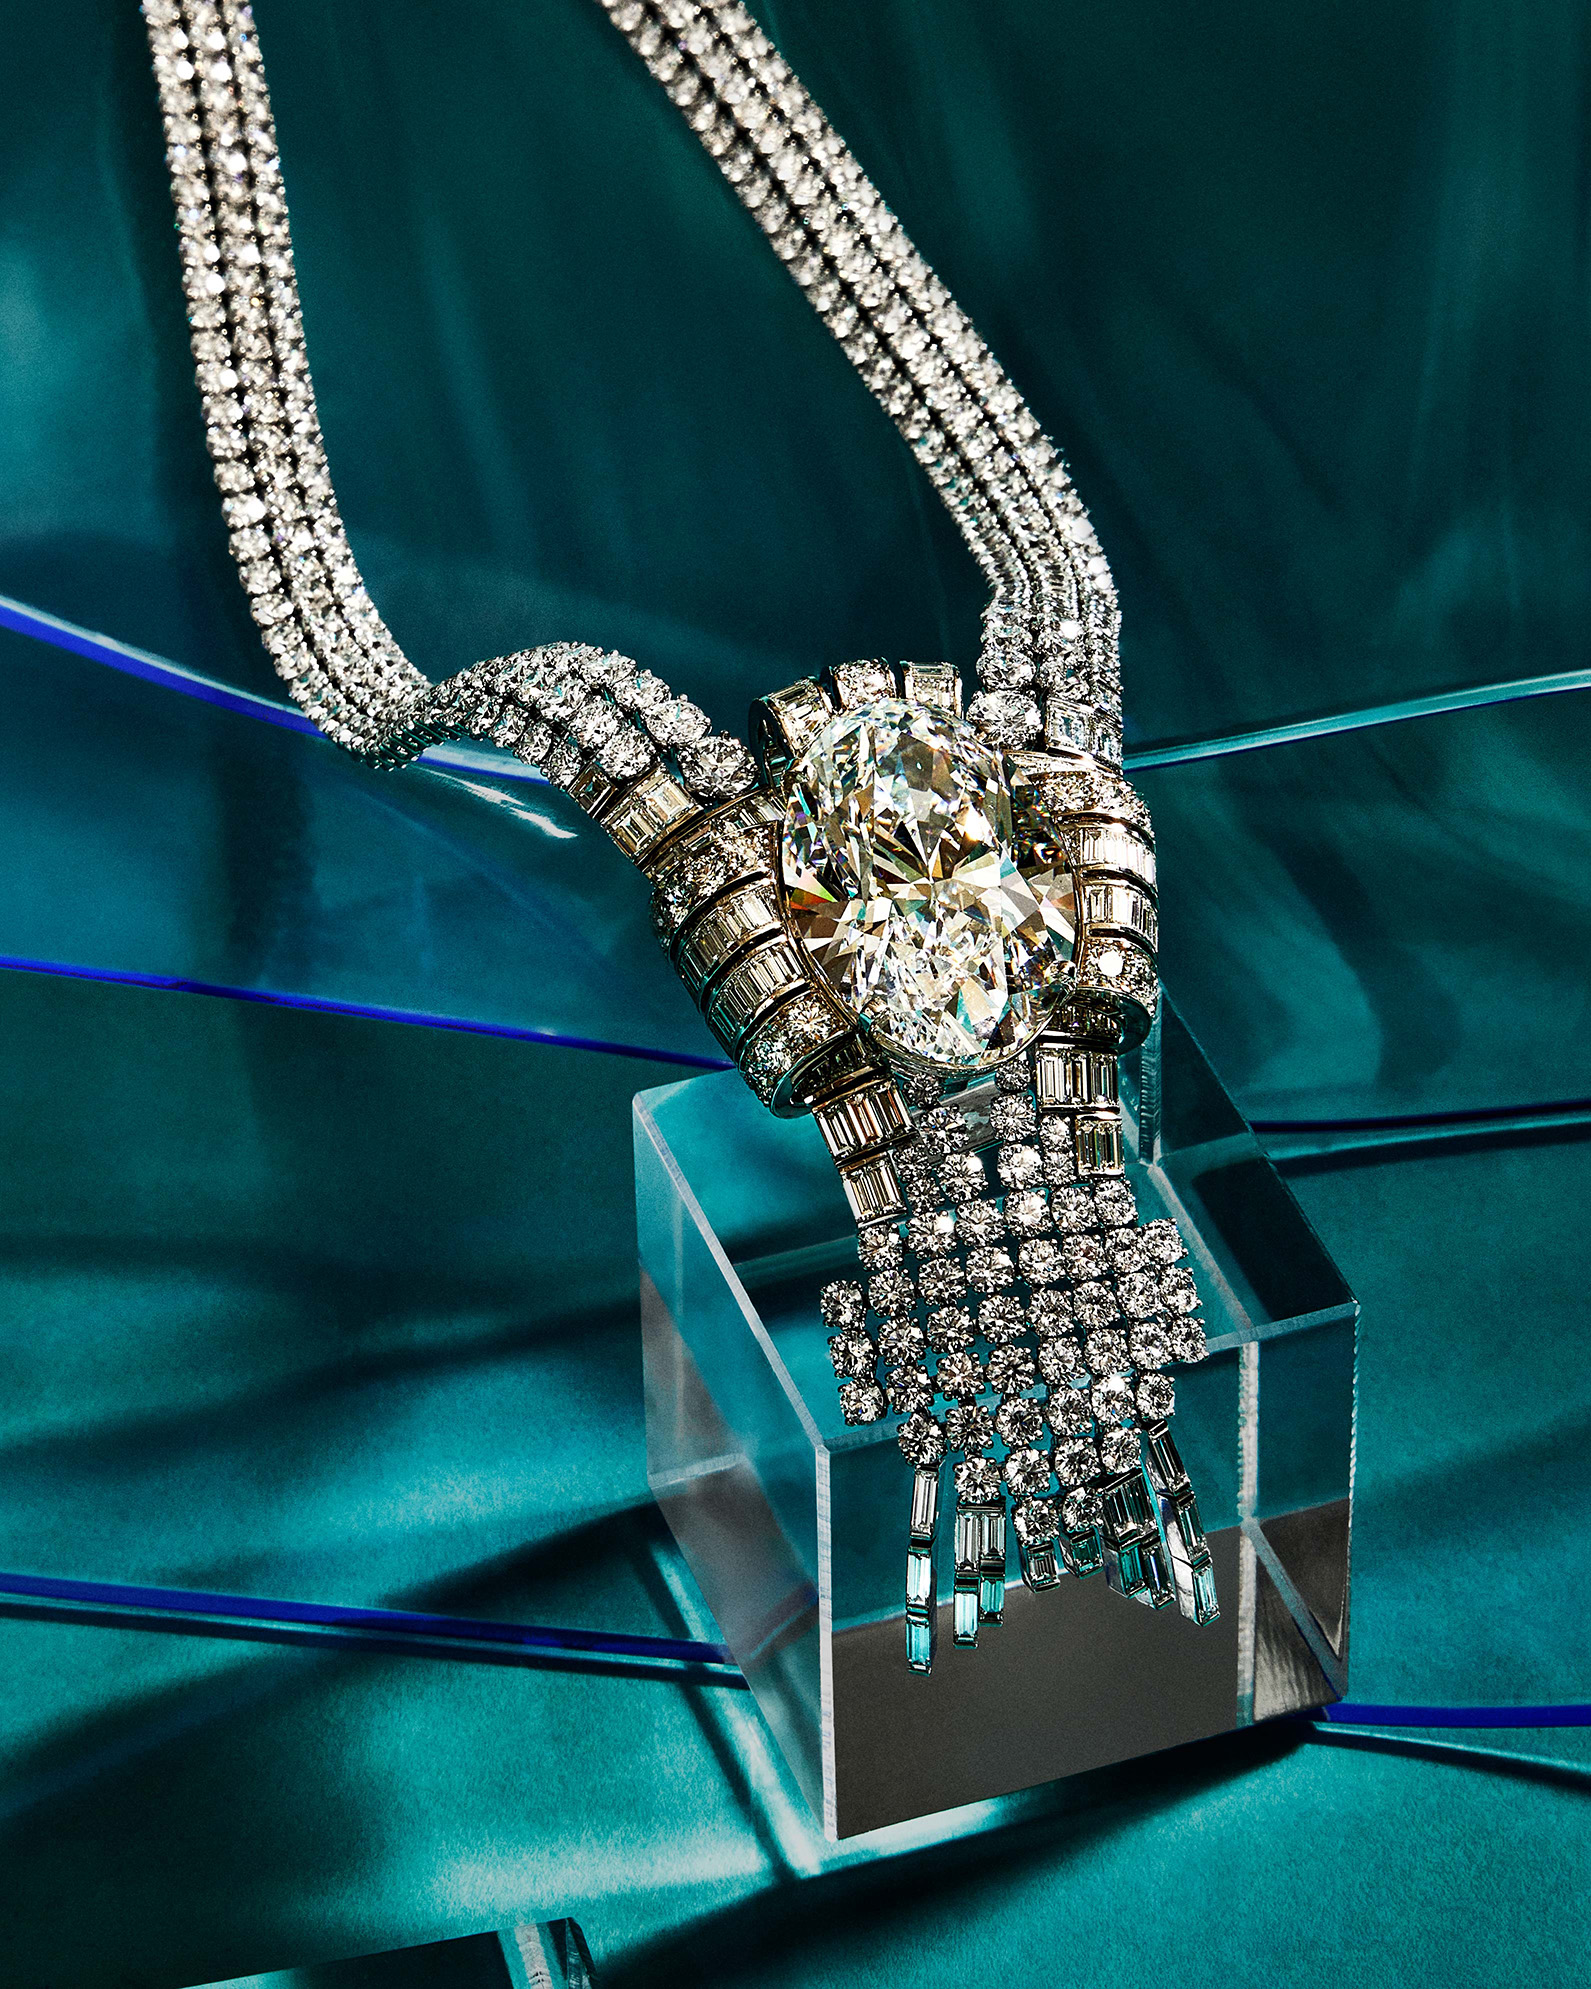  Показали, как выглядит самое дорогое украшение в истории Tiffany: сколько миллионов долларов оно стоит (ФОТО) - фото 2